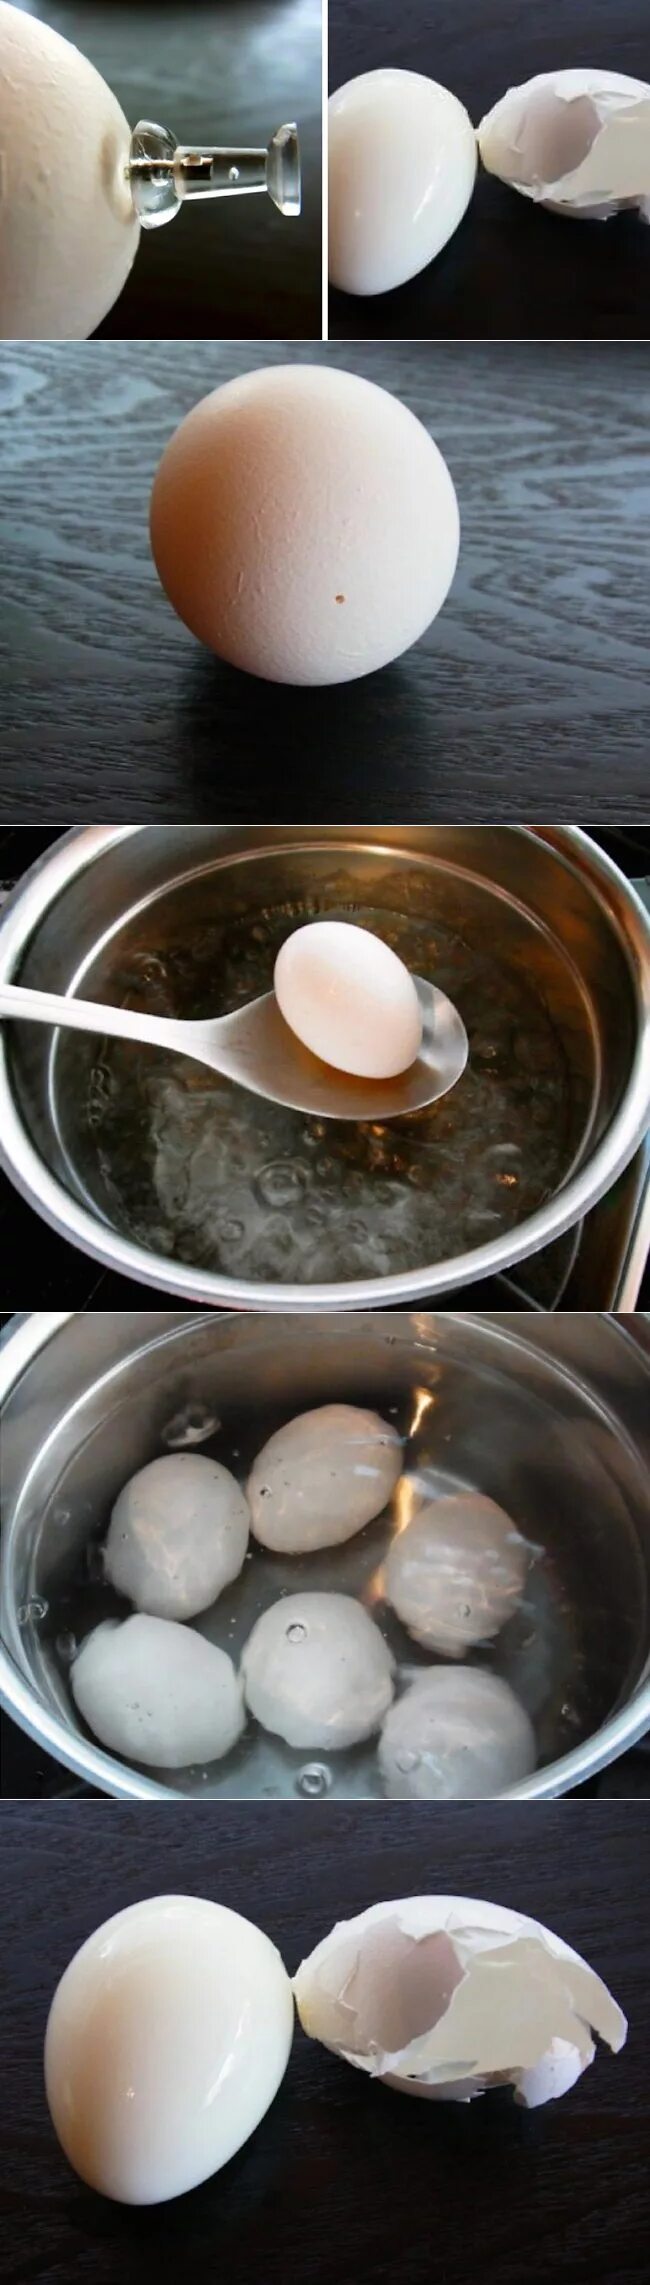 Сколько нужно варить яйца чтобы были жидкие. Варить яйца. Как варить яйца. Варка куриных яиц. Варка яиц в холодной воде.